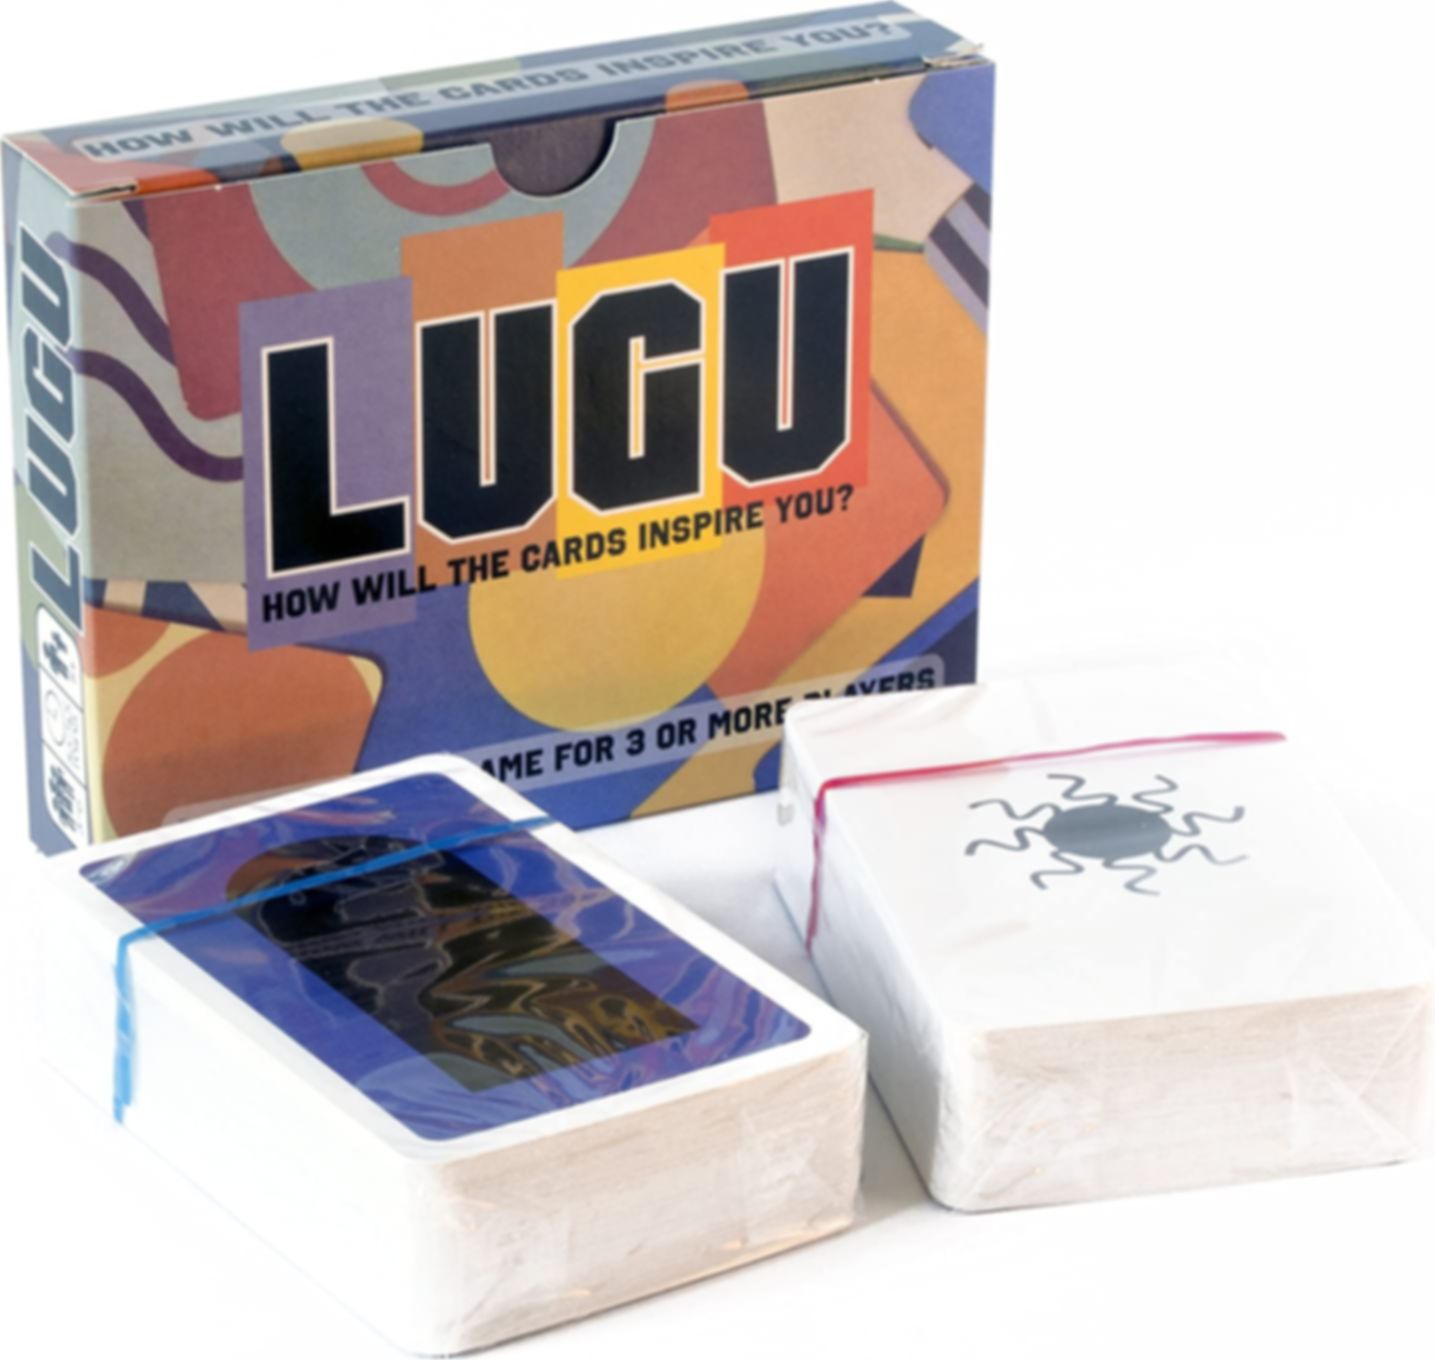 LUGU box